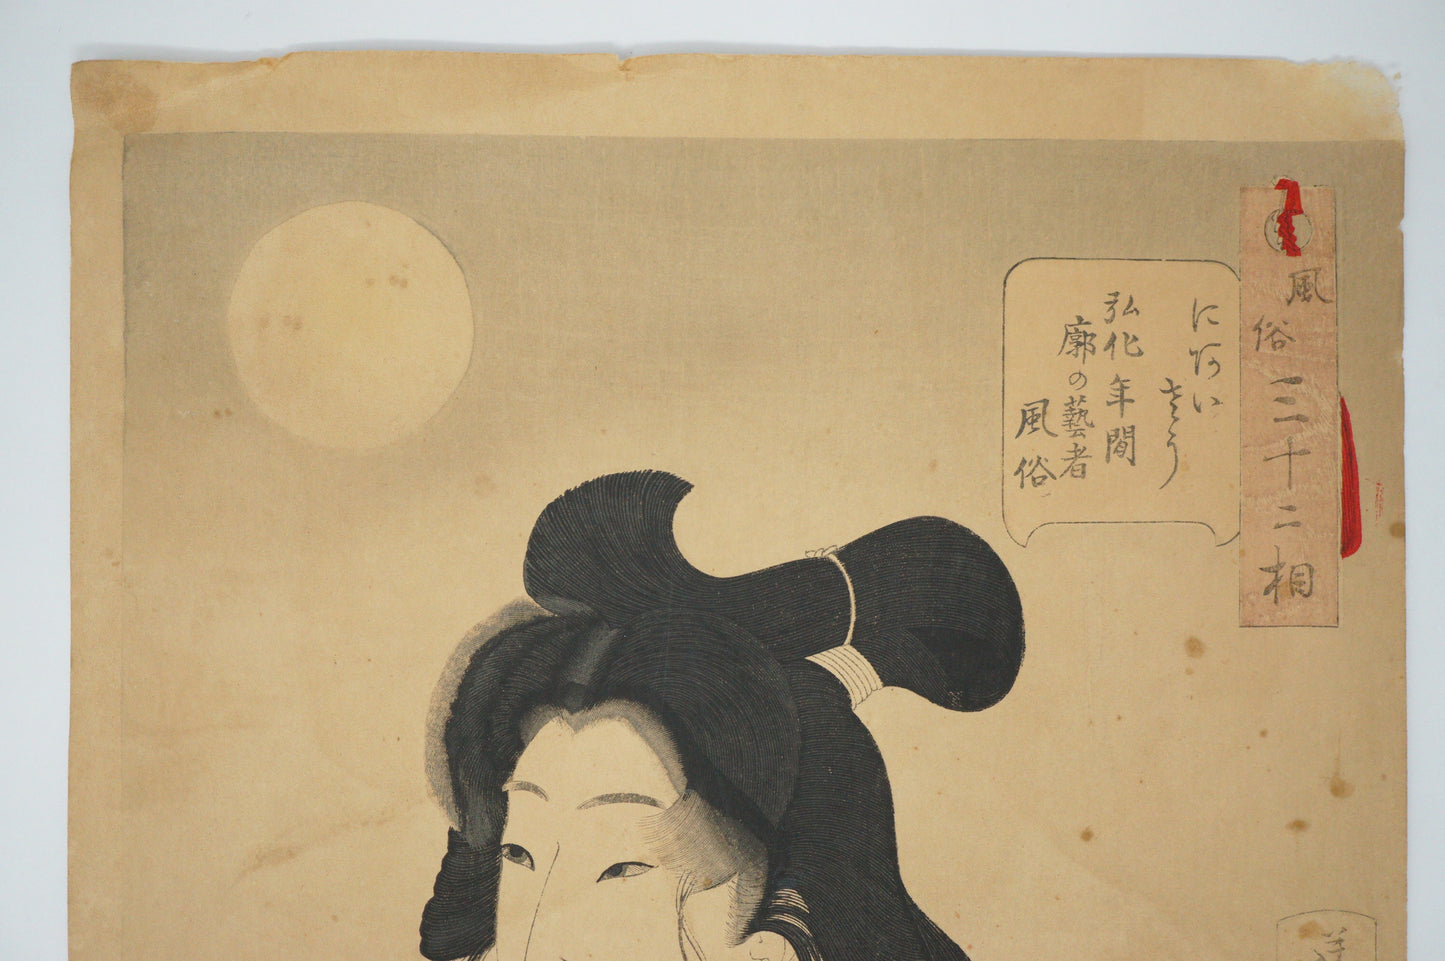 罕见的日本芳年木版画原版“看起来很合适” 0310E9